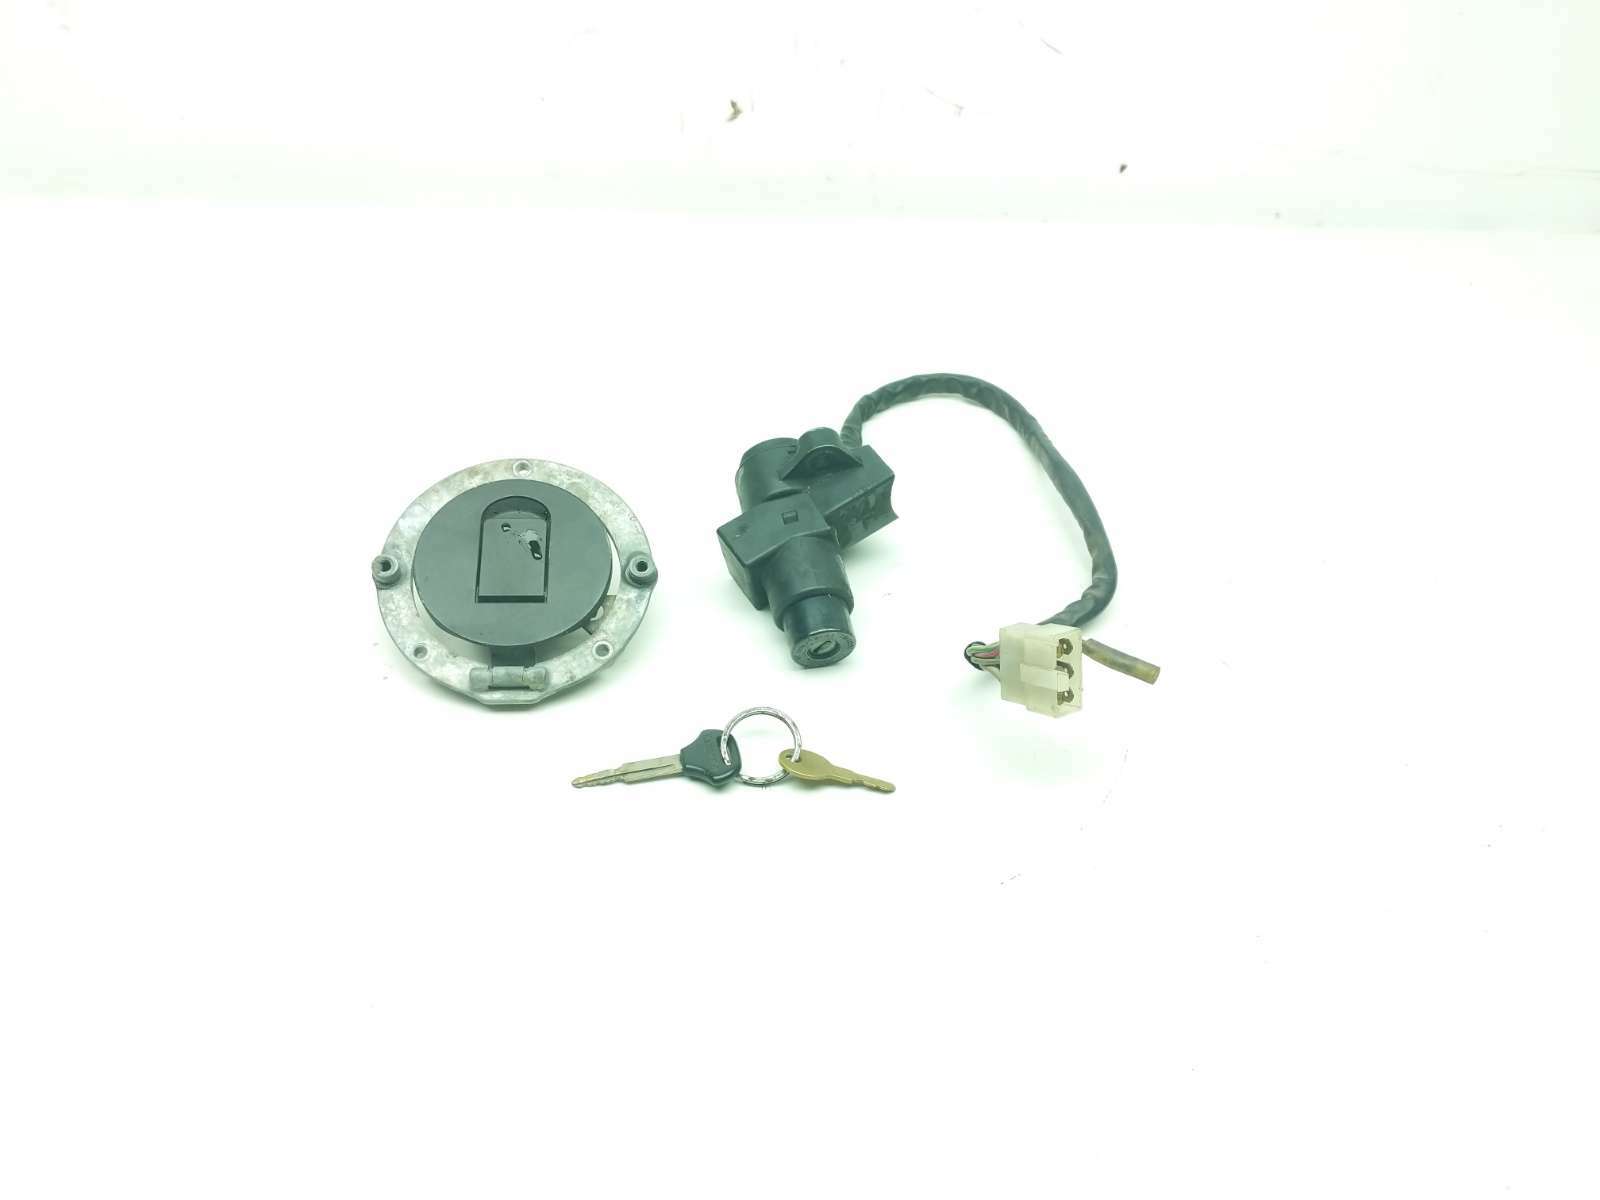 00 Kawasaki Ninja ZX1200 ZX12R Lock Set Ignition Switch Cap And Key